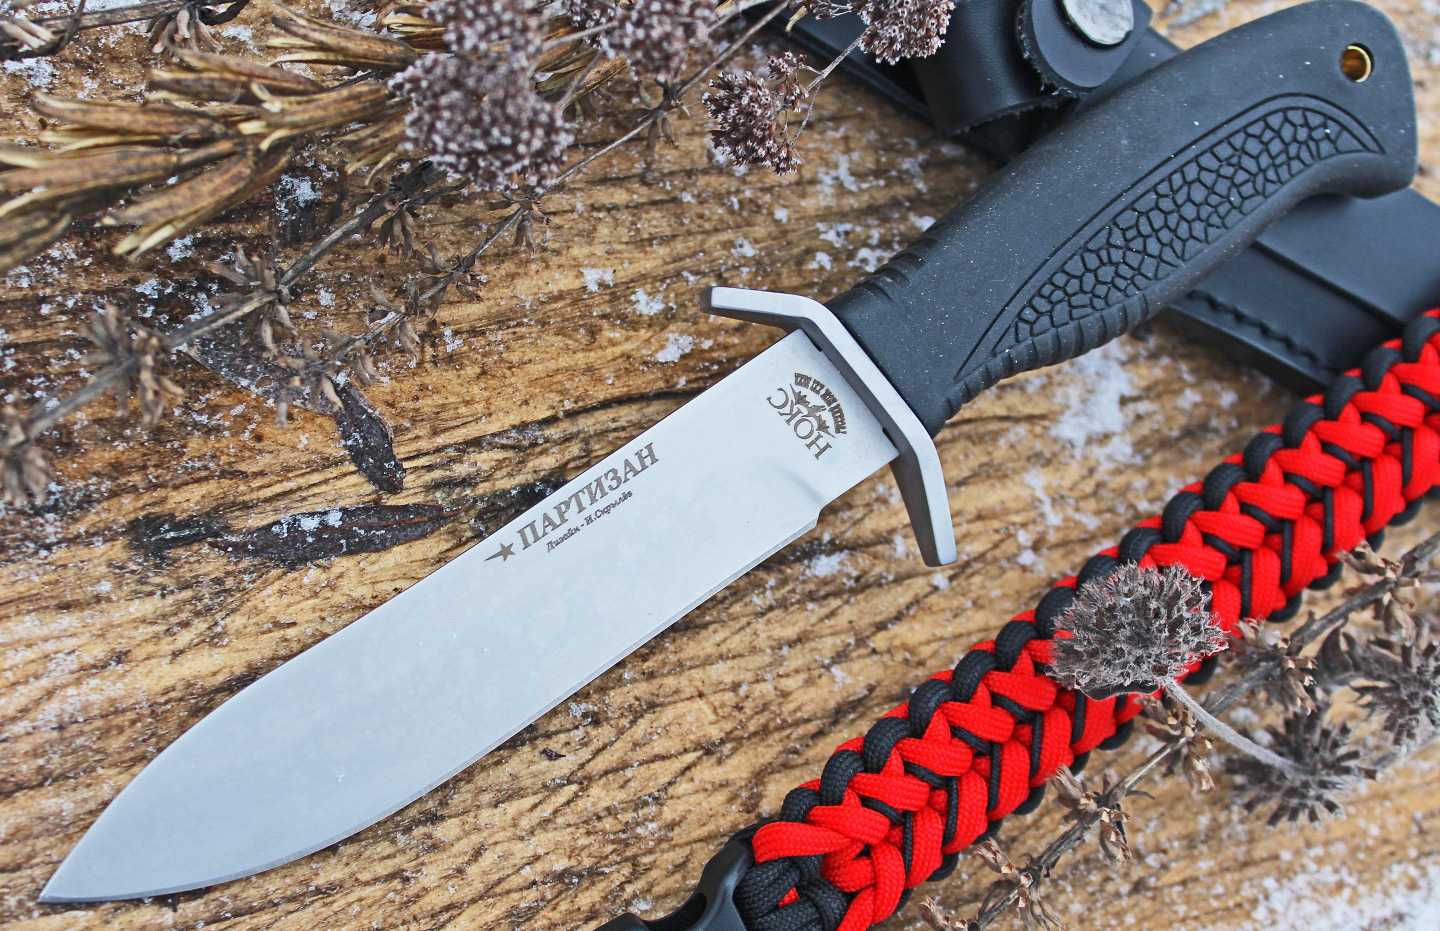 Тактические ножи — не просто холодное оружие, а многофункциональные и надежные инструменты Тысячи туристов, охотников и рыбаков с используют их Рассказываем как выбрать лучший охотничий тактический нож